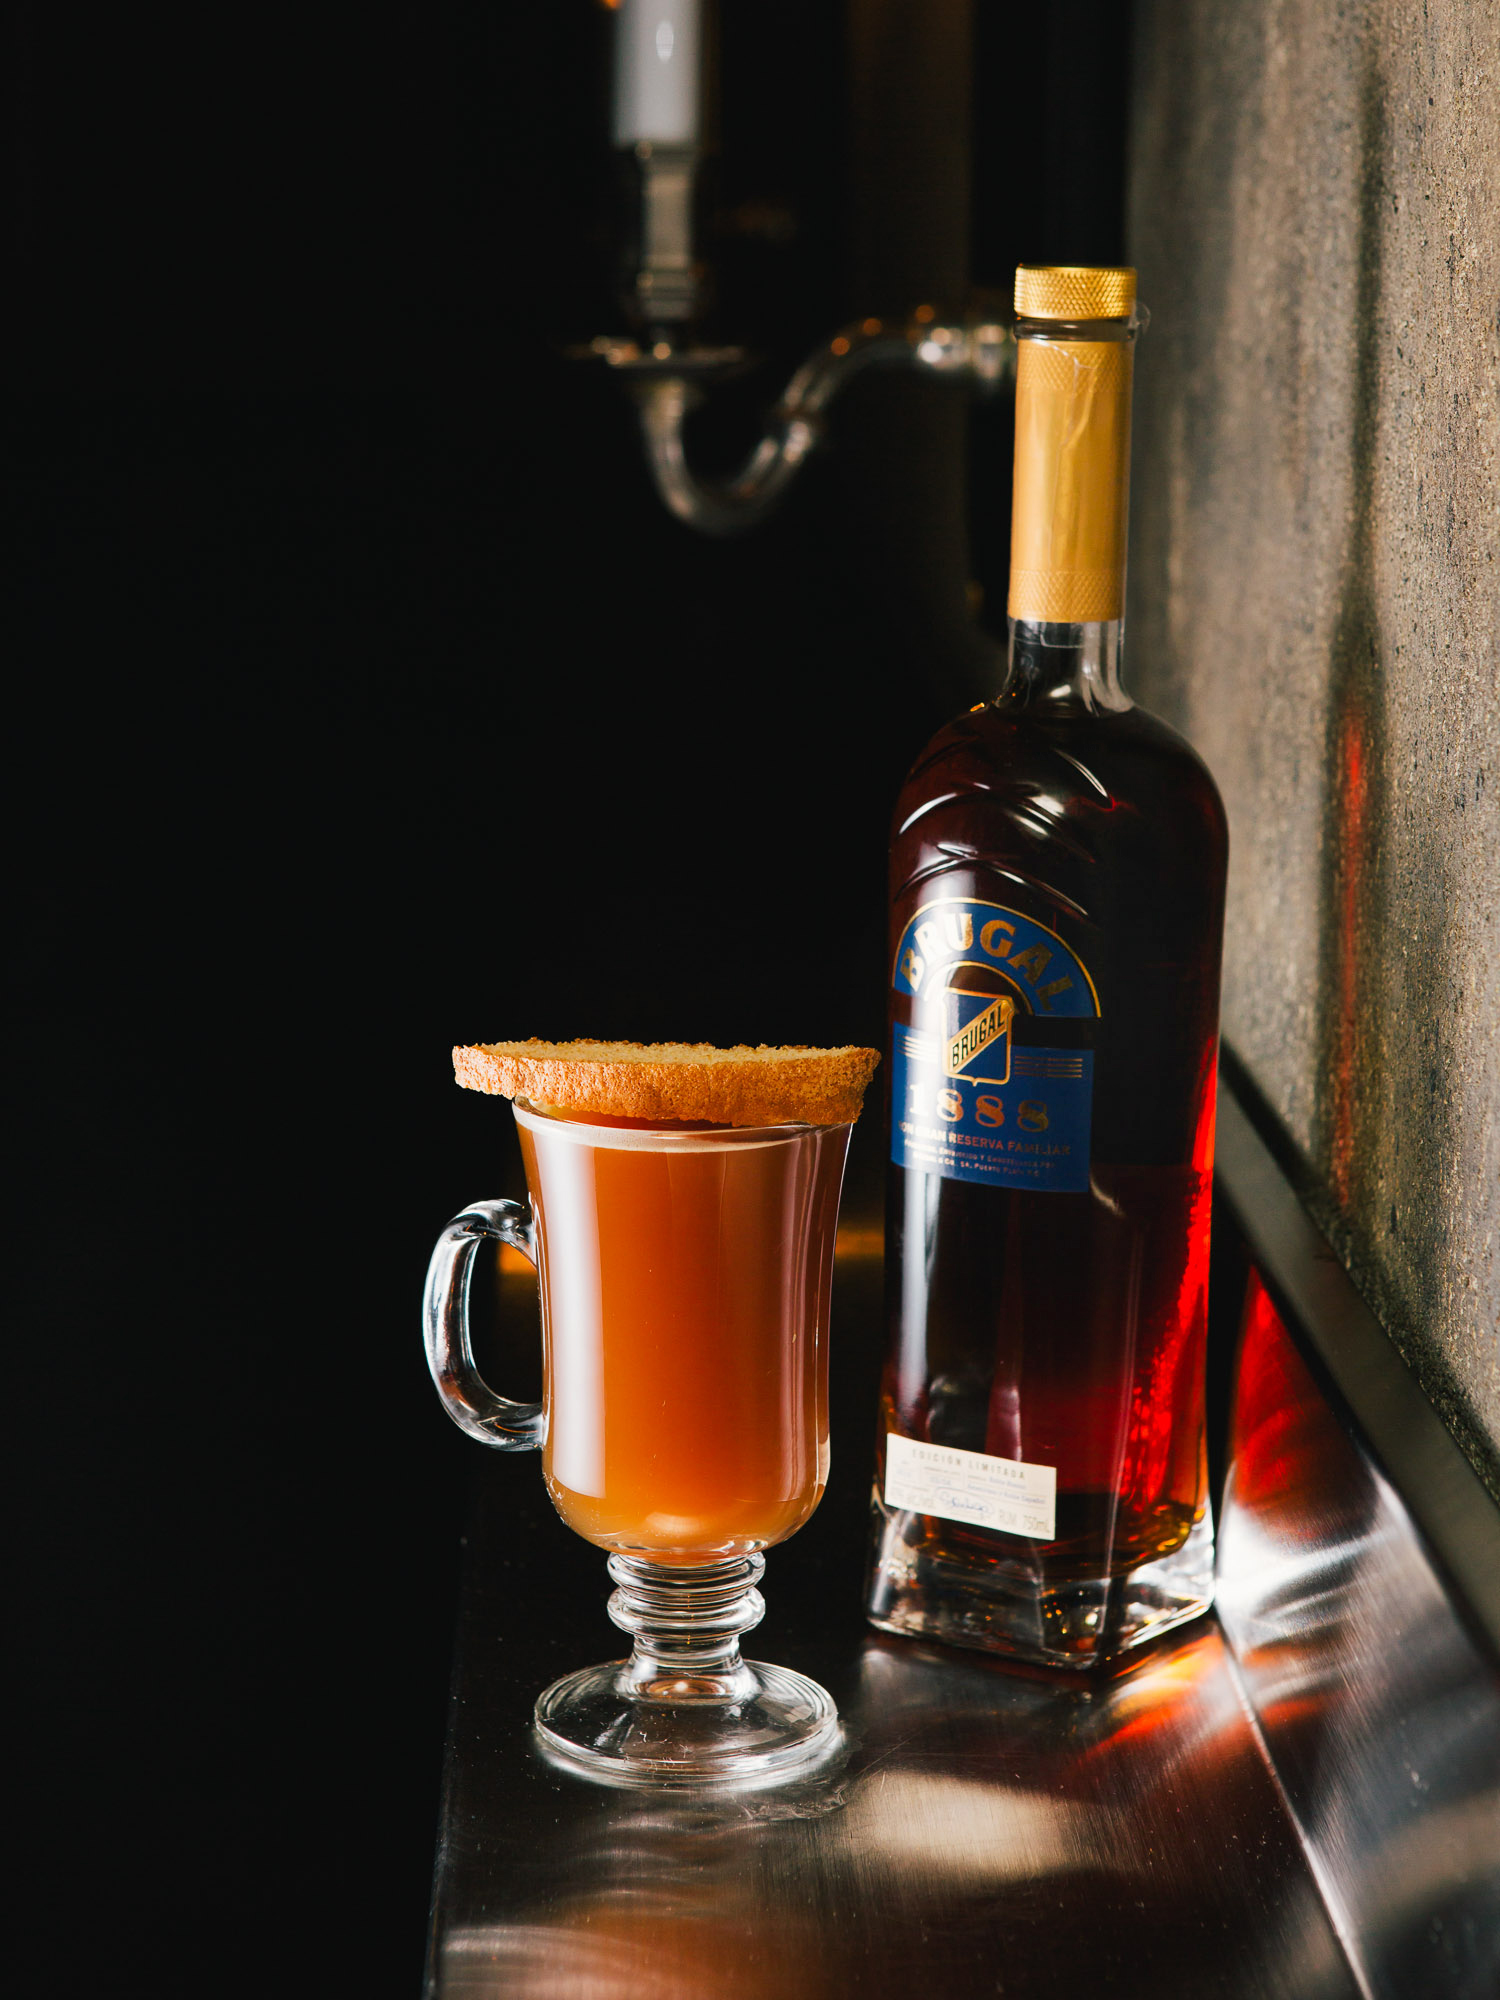 Brugal Rum cocktails